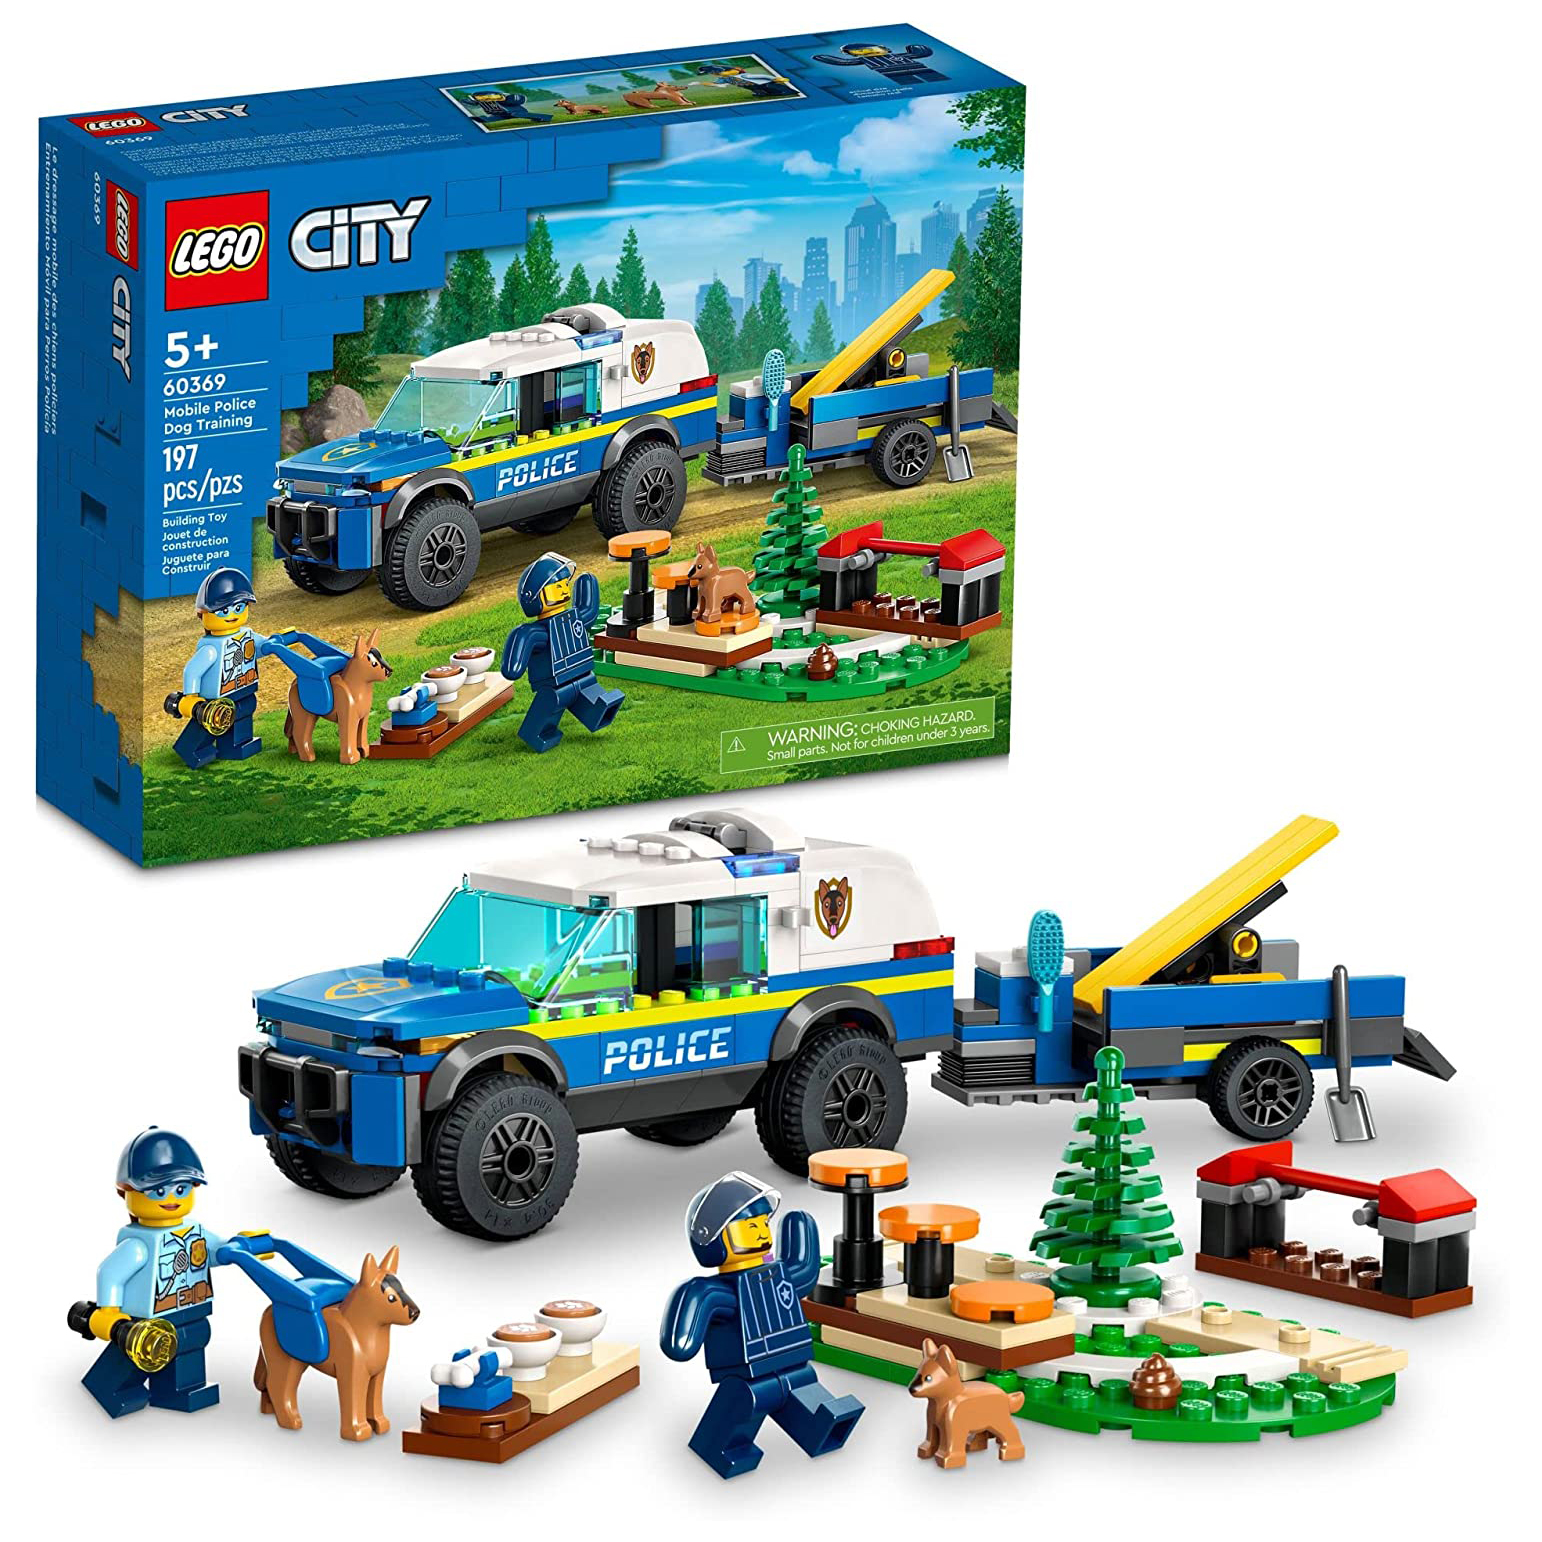 Конструктор LEGO City Дрессировка полицейской собаки на выезде, 197 деталей, 60369